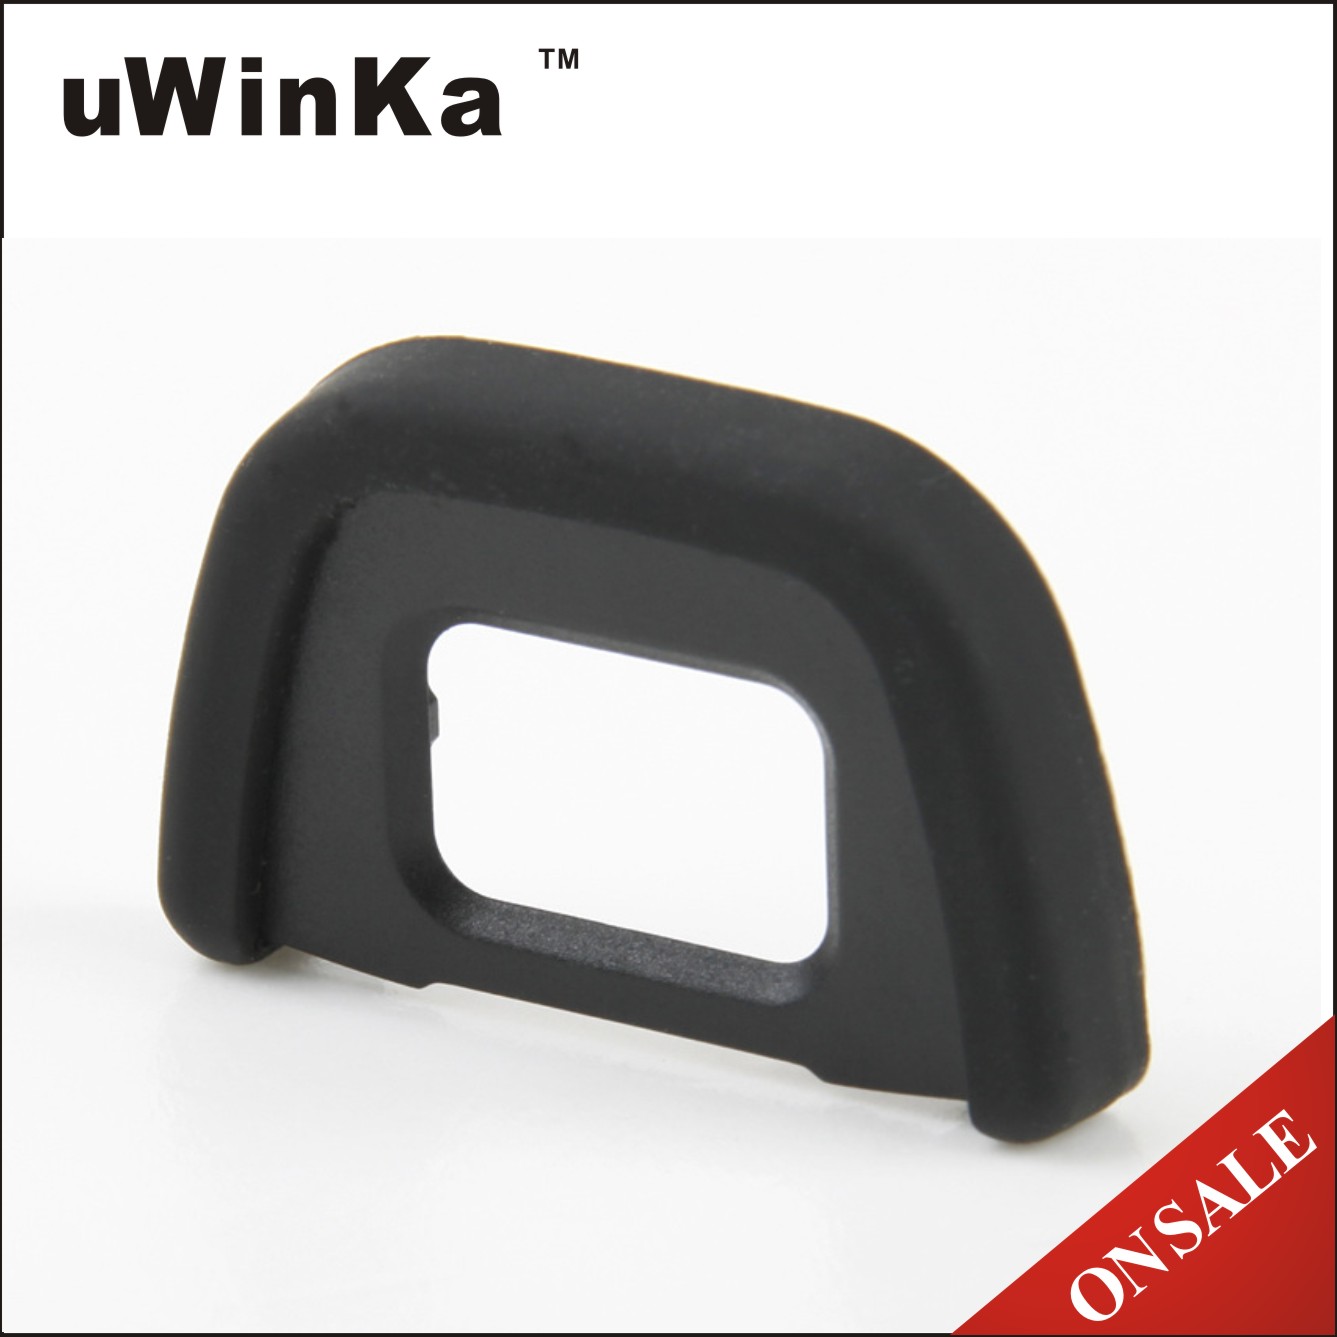 uWinka副廠相容Nikon眼罩DK-20 DK-21 DK-23 DK-24 DK-25眼罩即EN-1